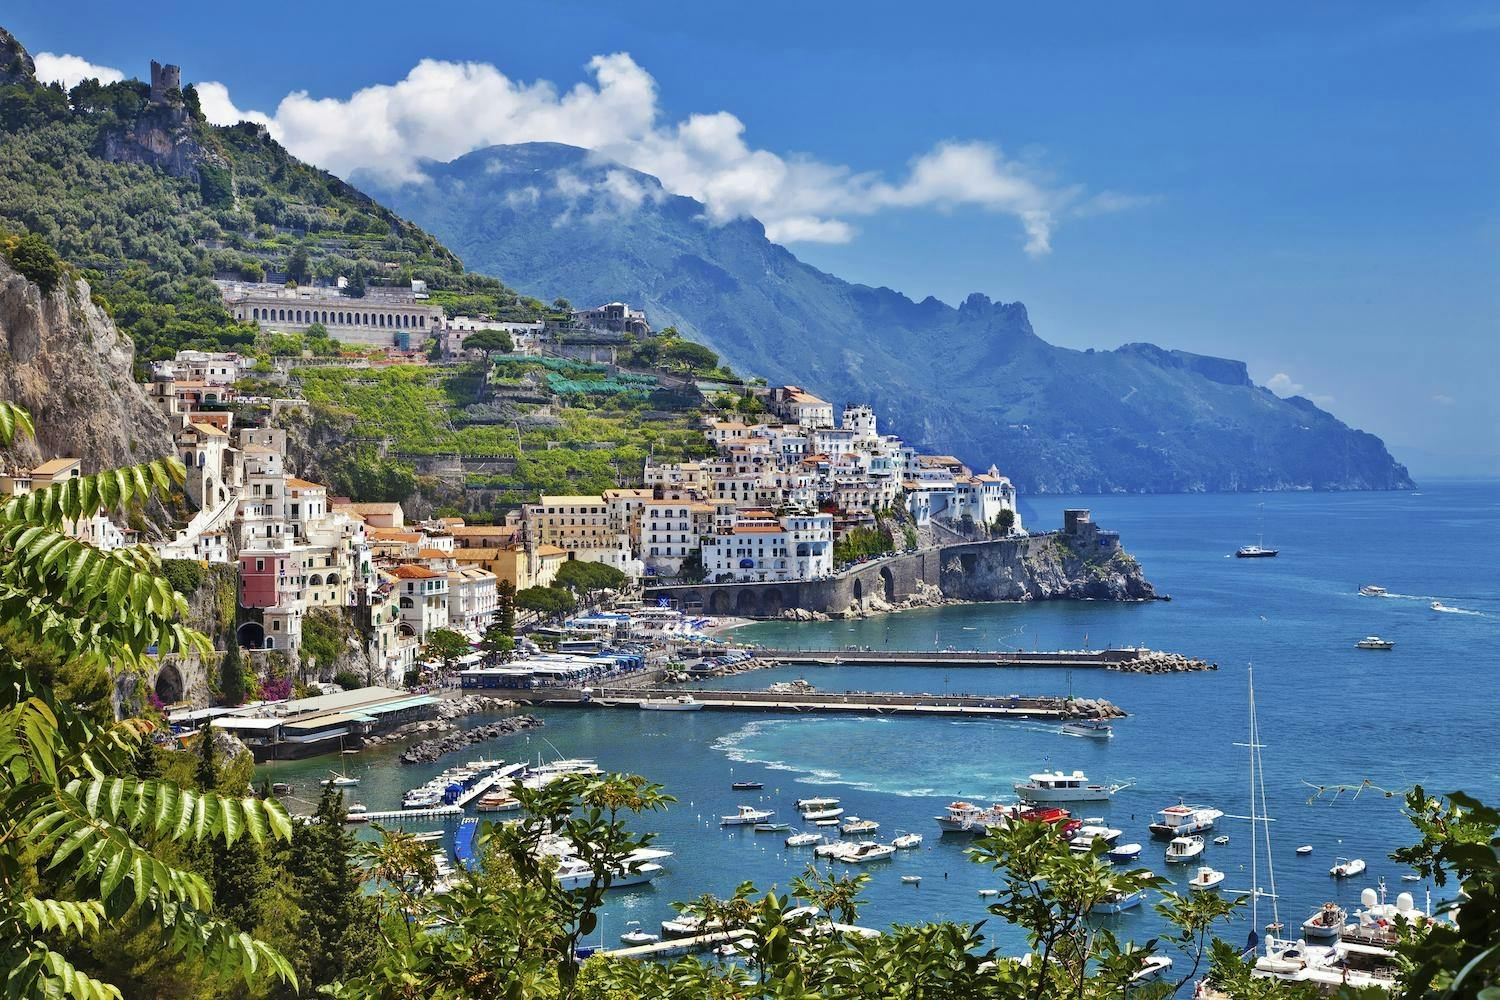 Excursión a la Costa Amalfitana y Positano desde Roma en tren de alta velocidad